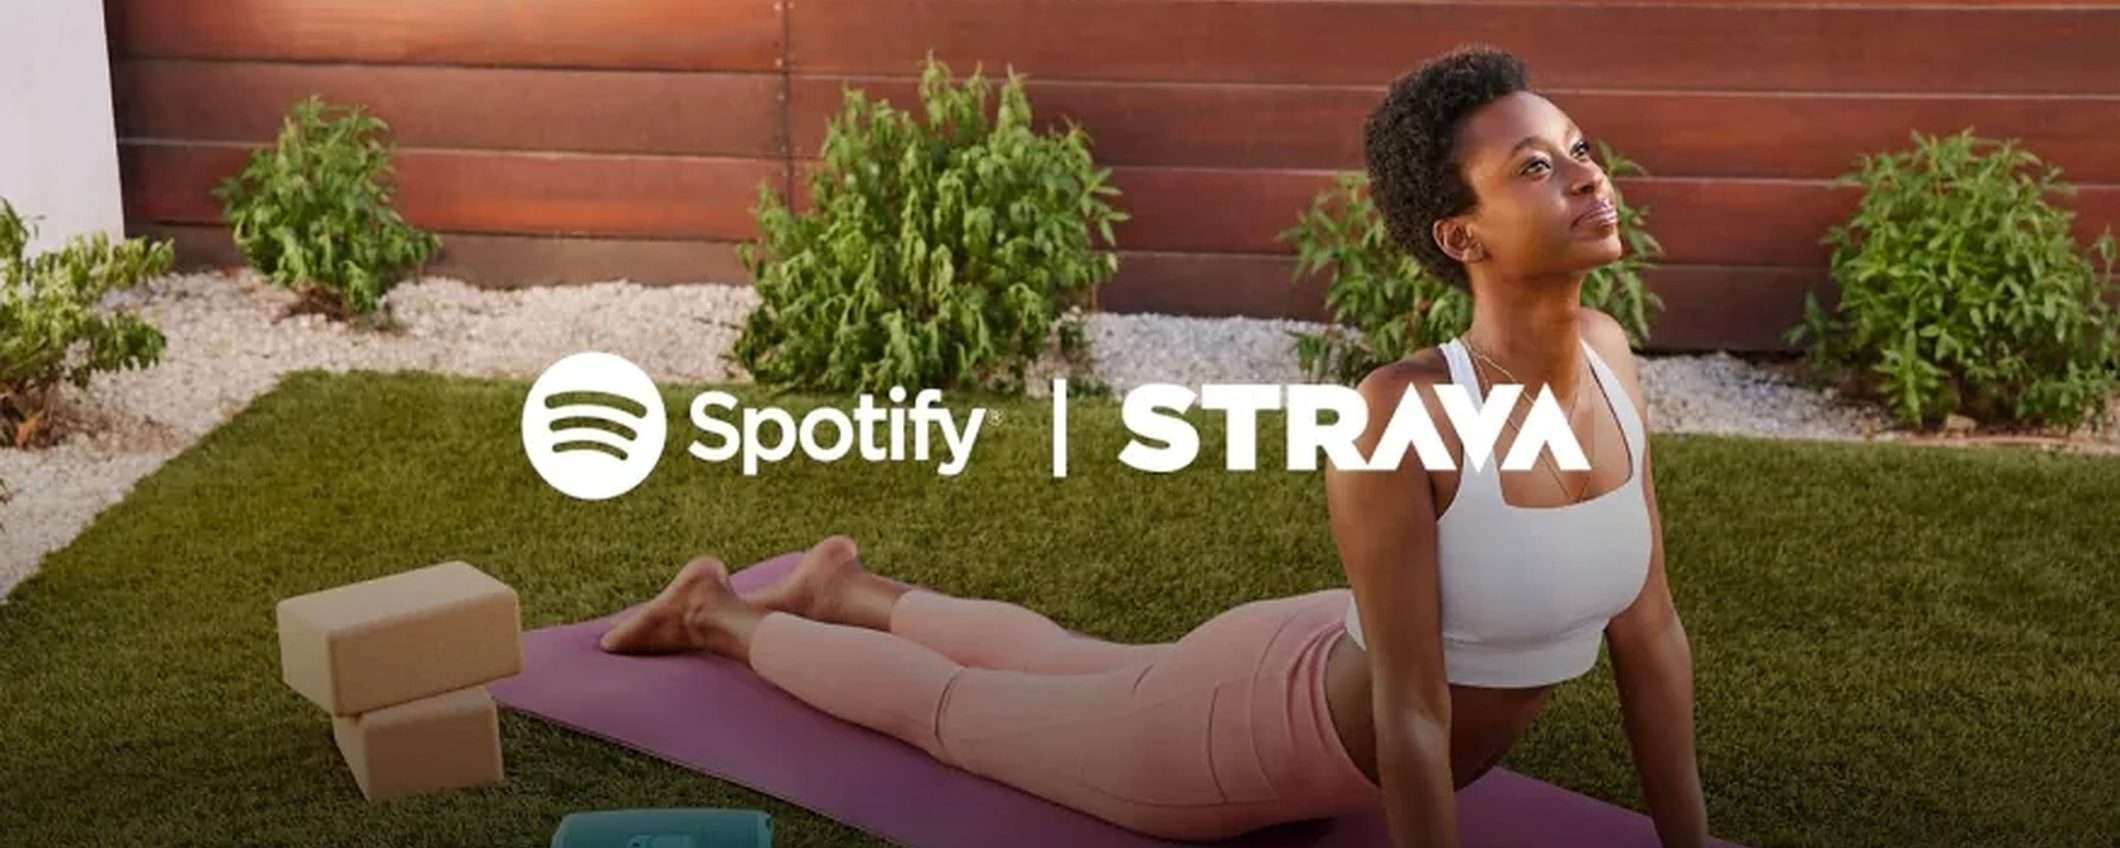 Spotify arriva finalmente su Strava dopo anni di attesa